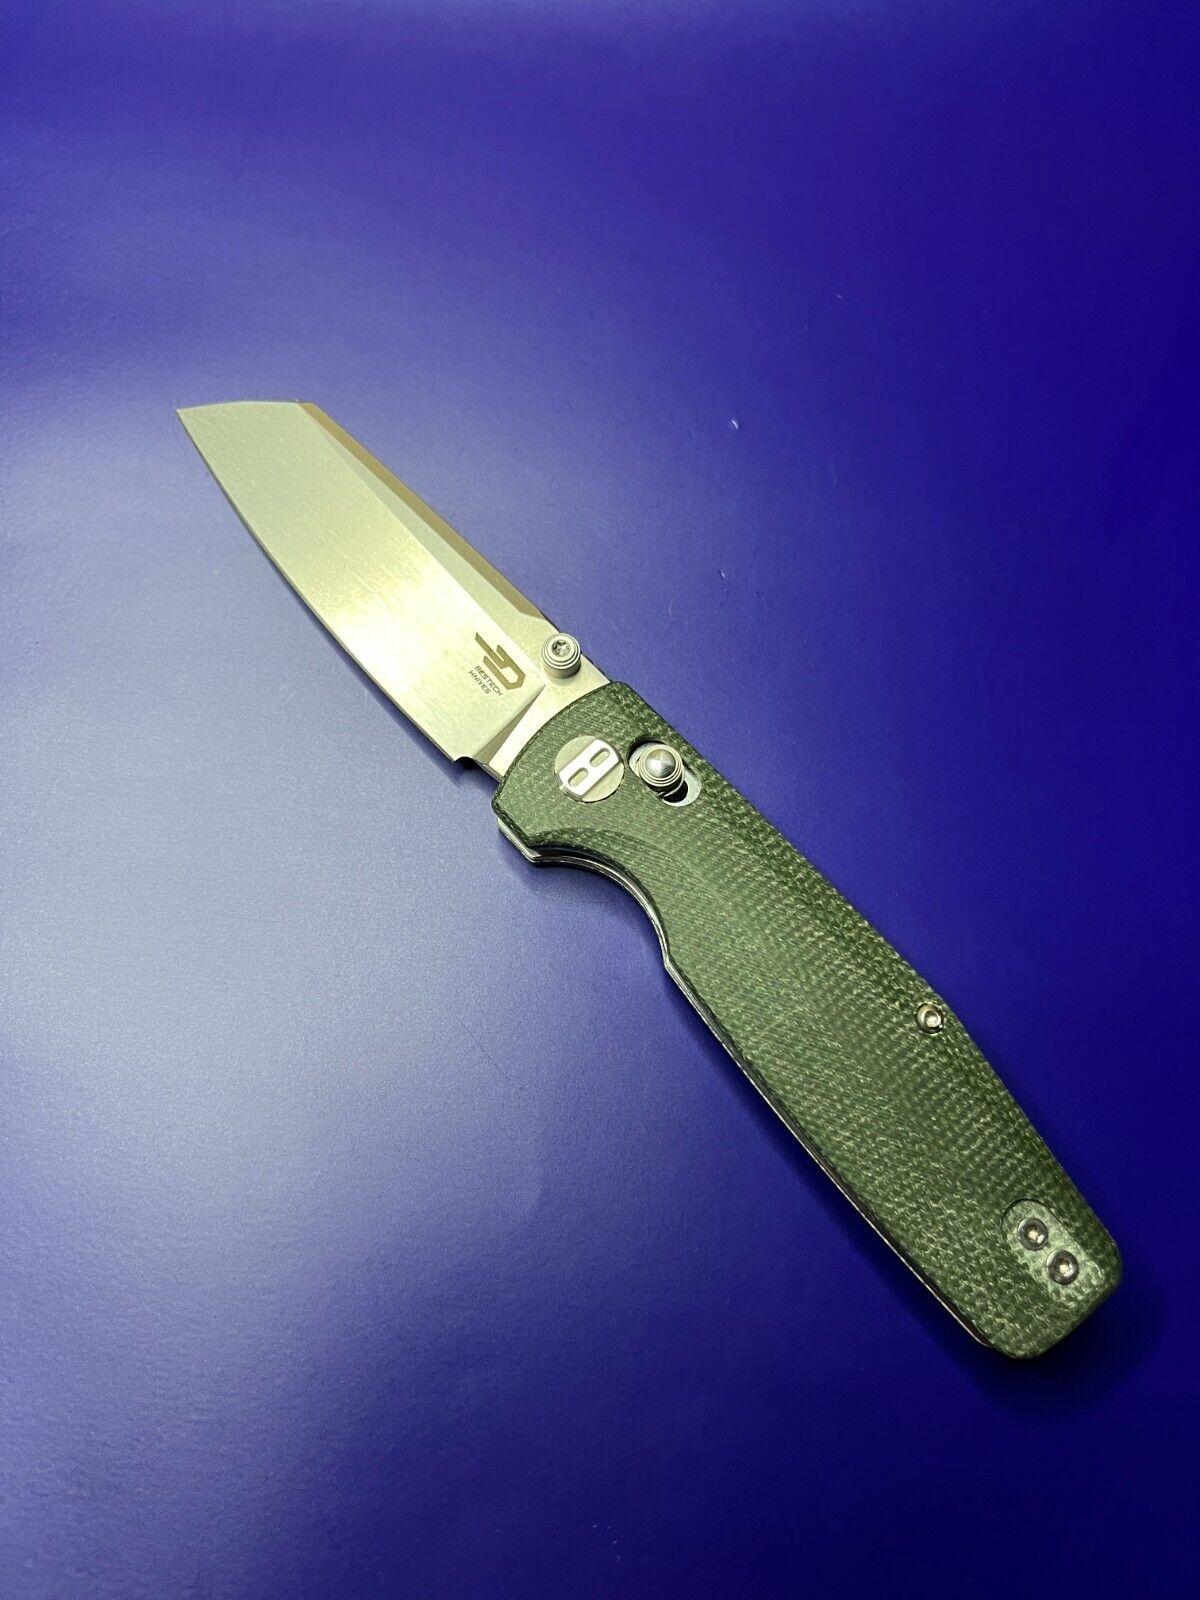 Bestech Knives Slasher Folding Knife 2.8\